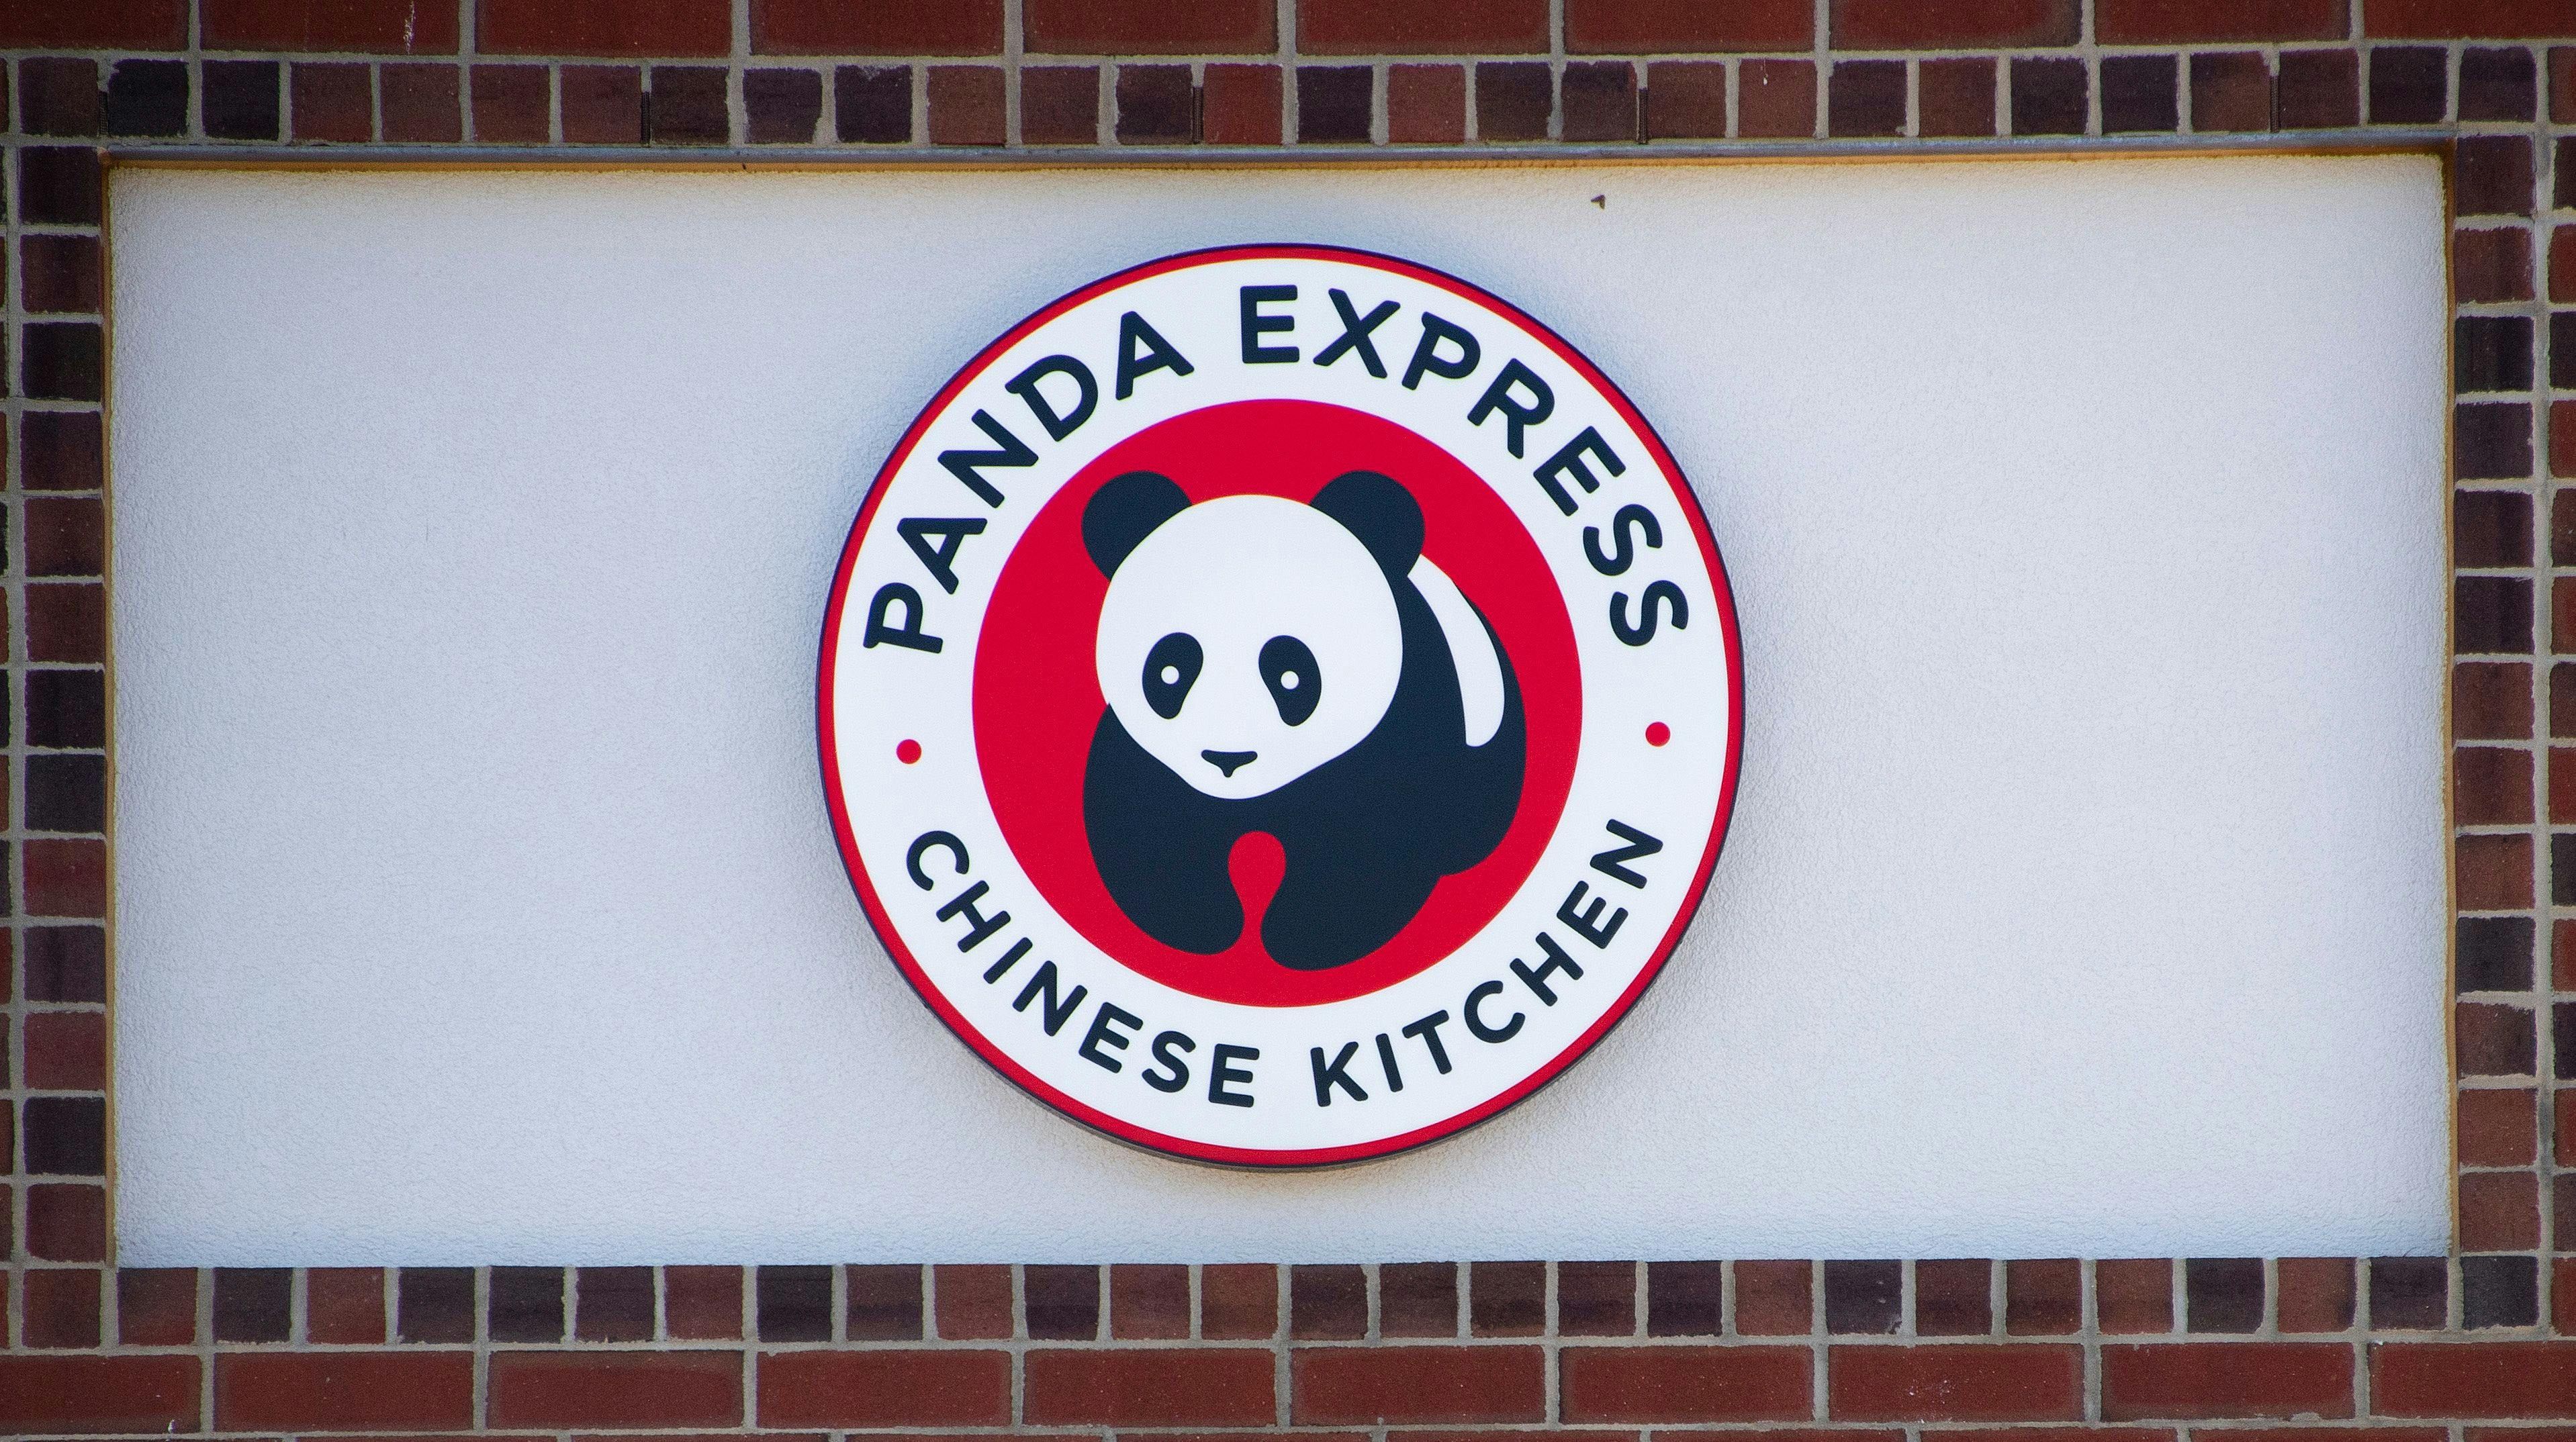 Window sign of a Panda Express restaurant